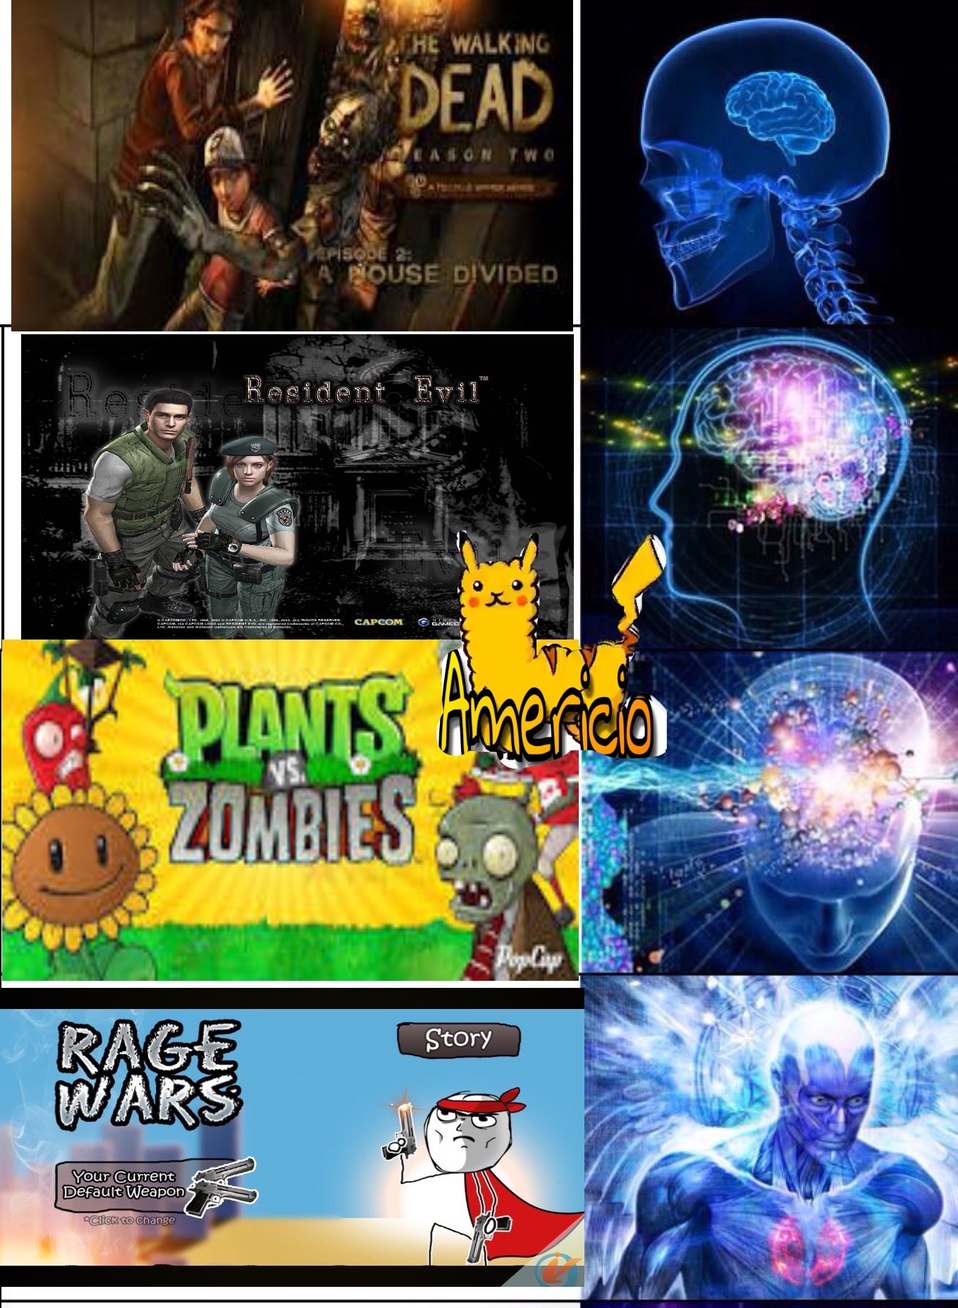 zombies - meme